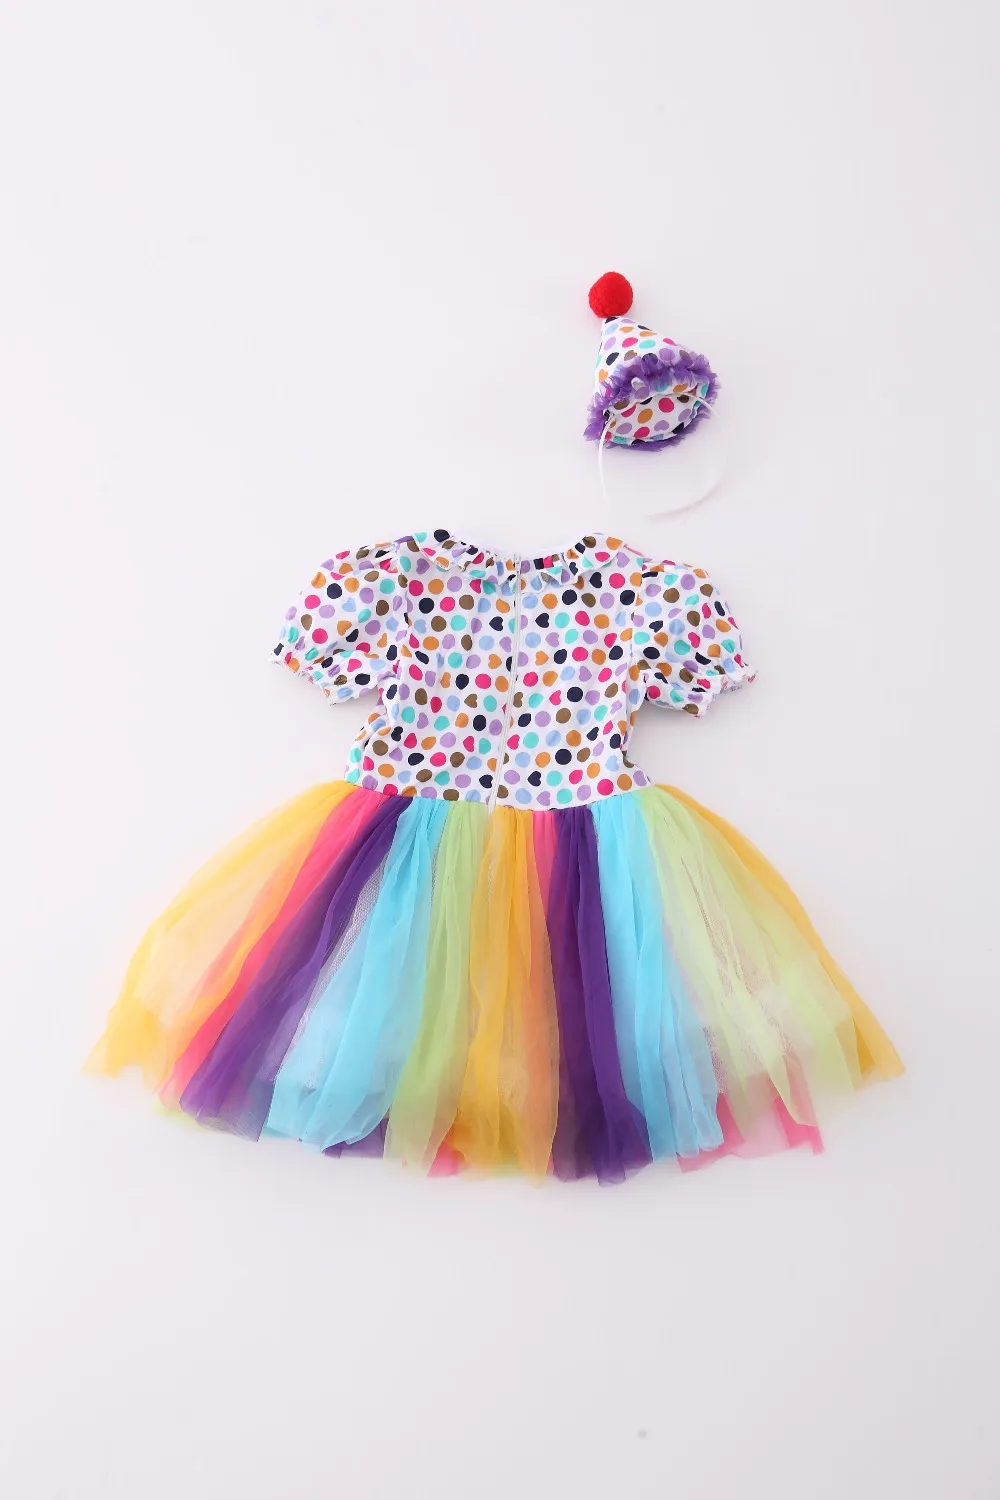 Новый Обувь для девочек Клоунский Костюм Хеллоуин костюм для детский наряд для костюмированной вечеринки выполнять юбка этап носить с